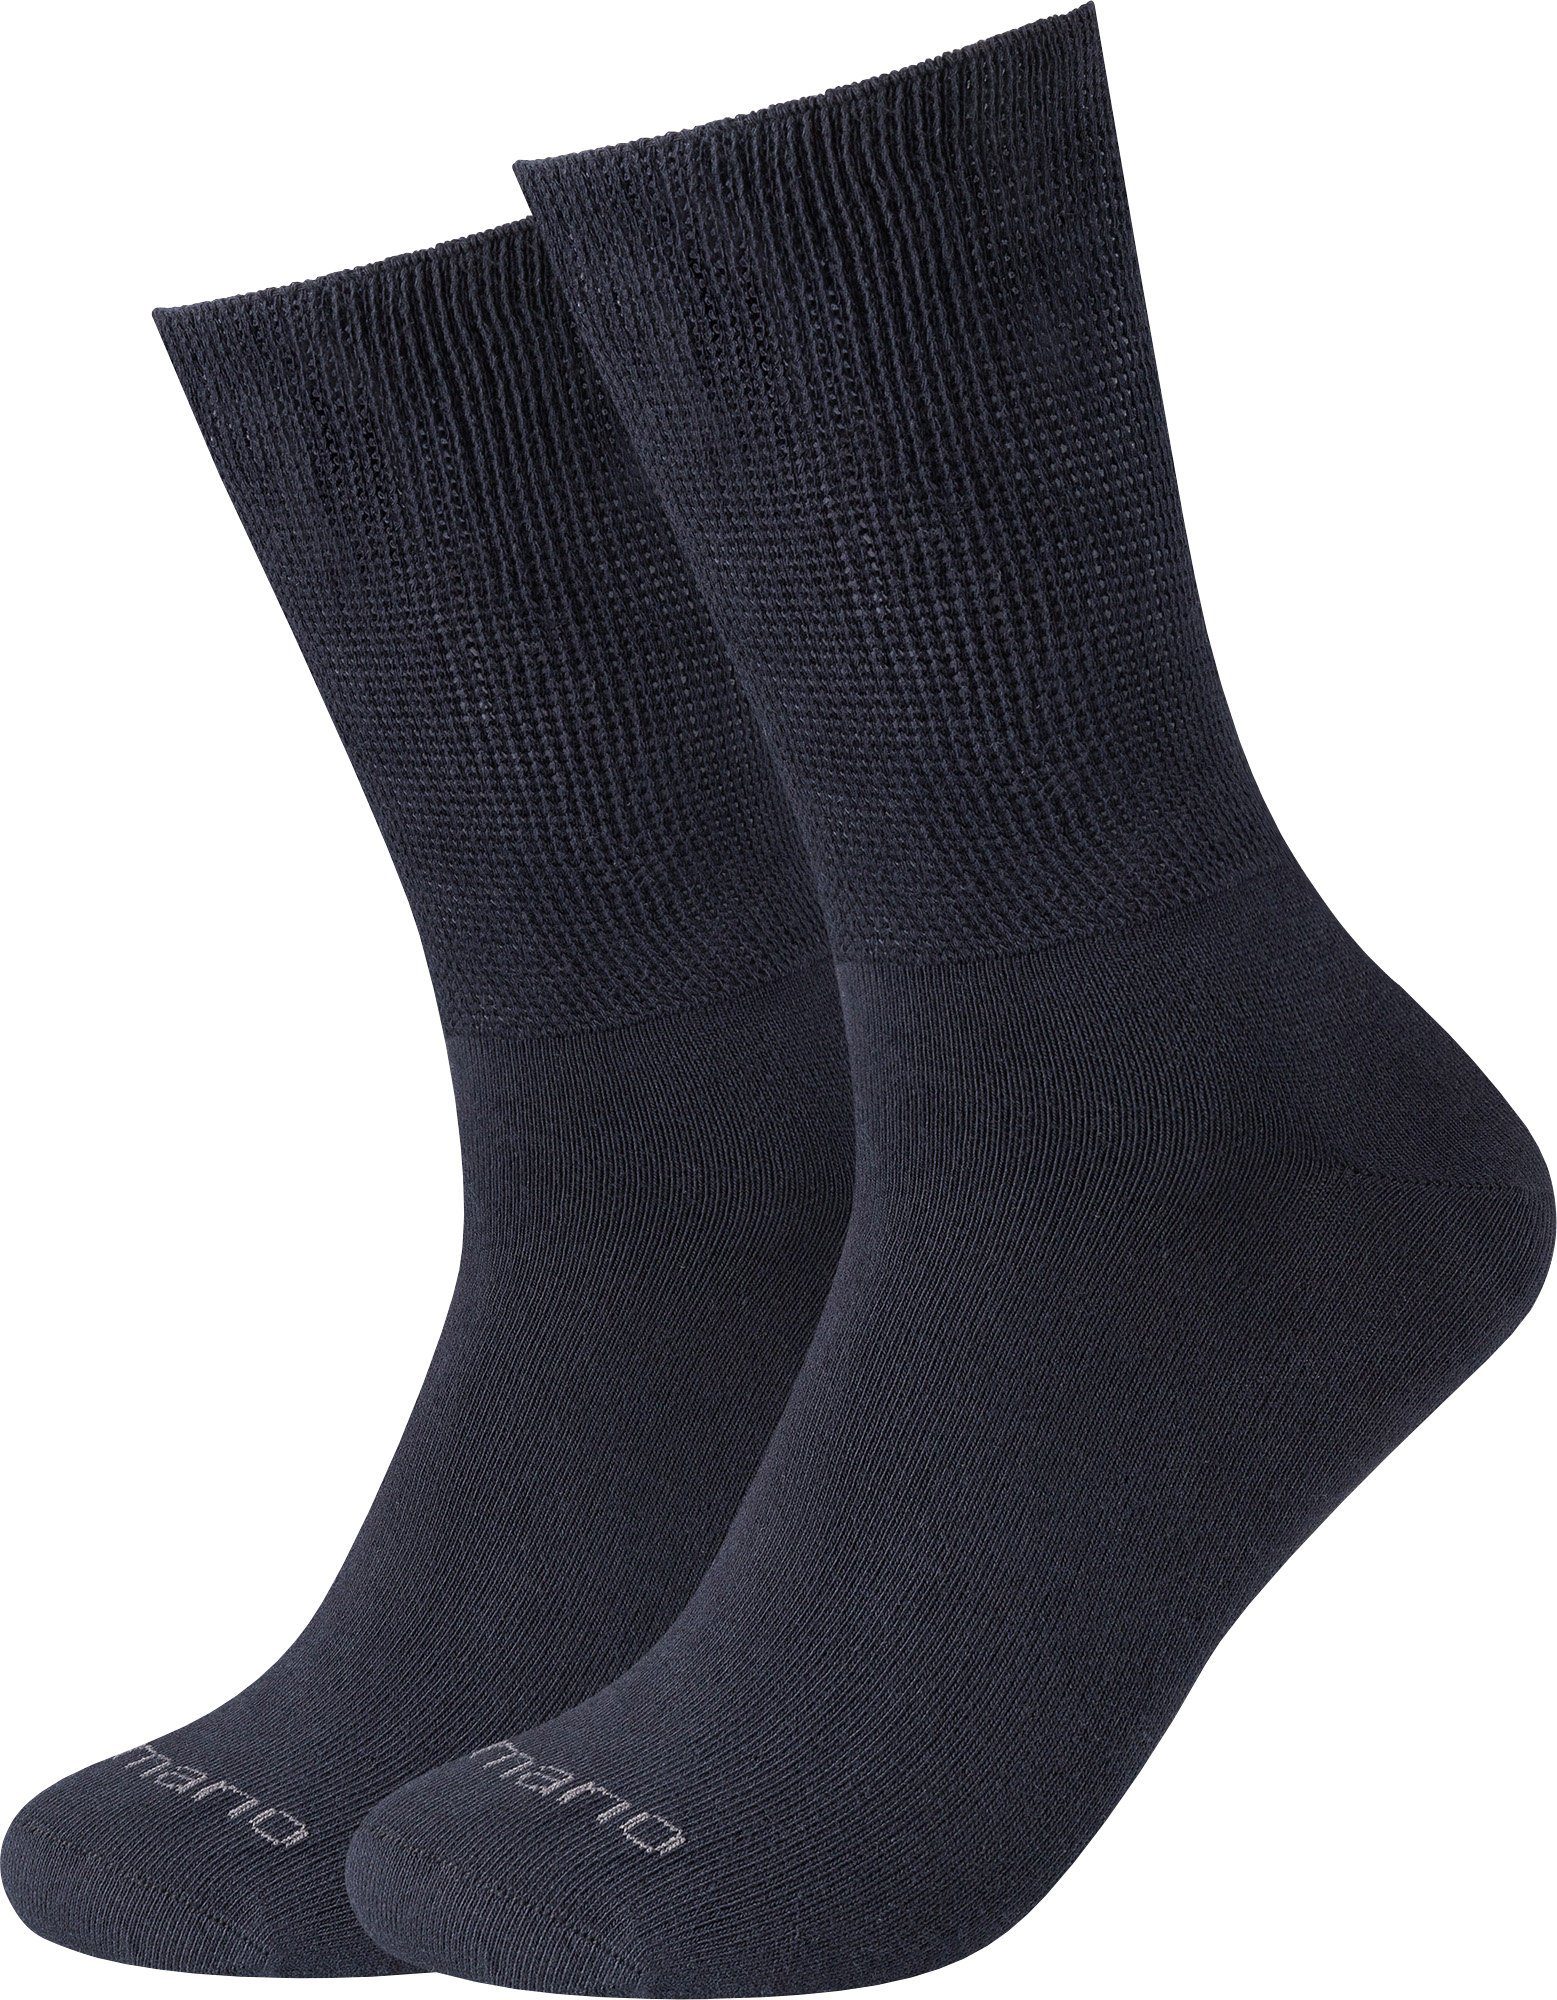 Softbund Paar mit Camano Unisex-Socken Uni 2 Socken marine